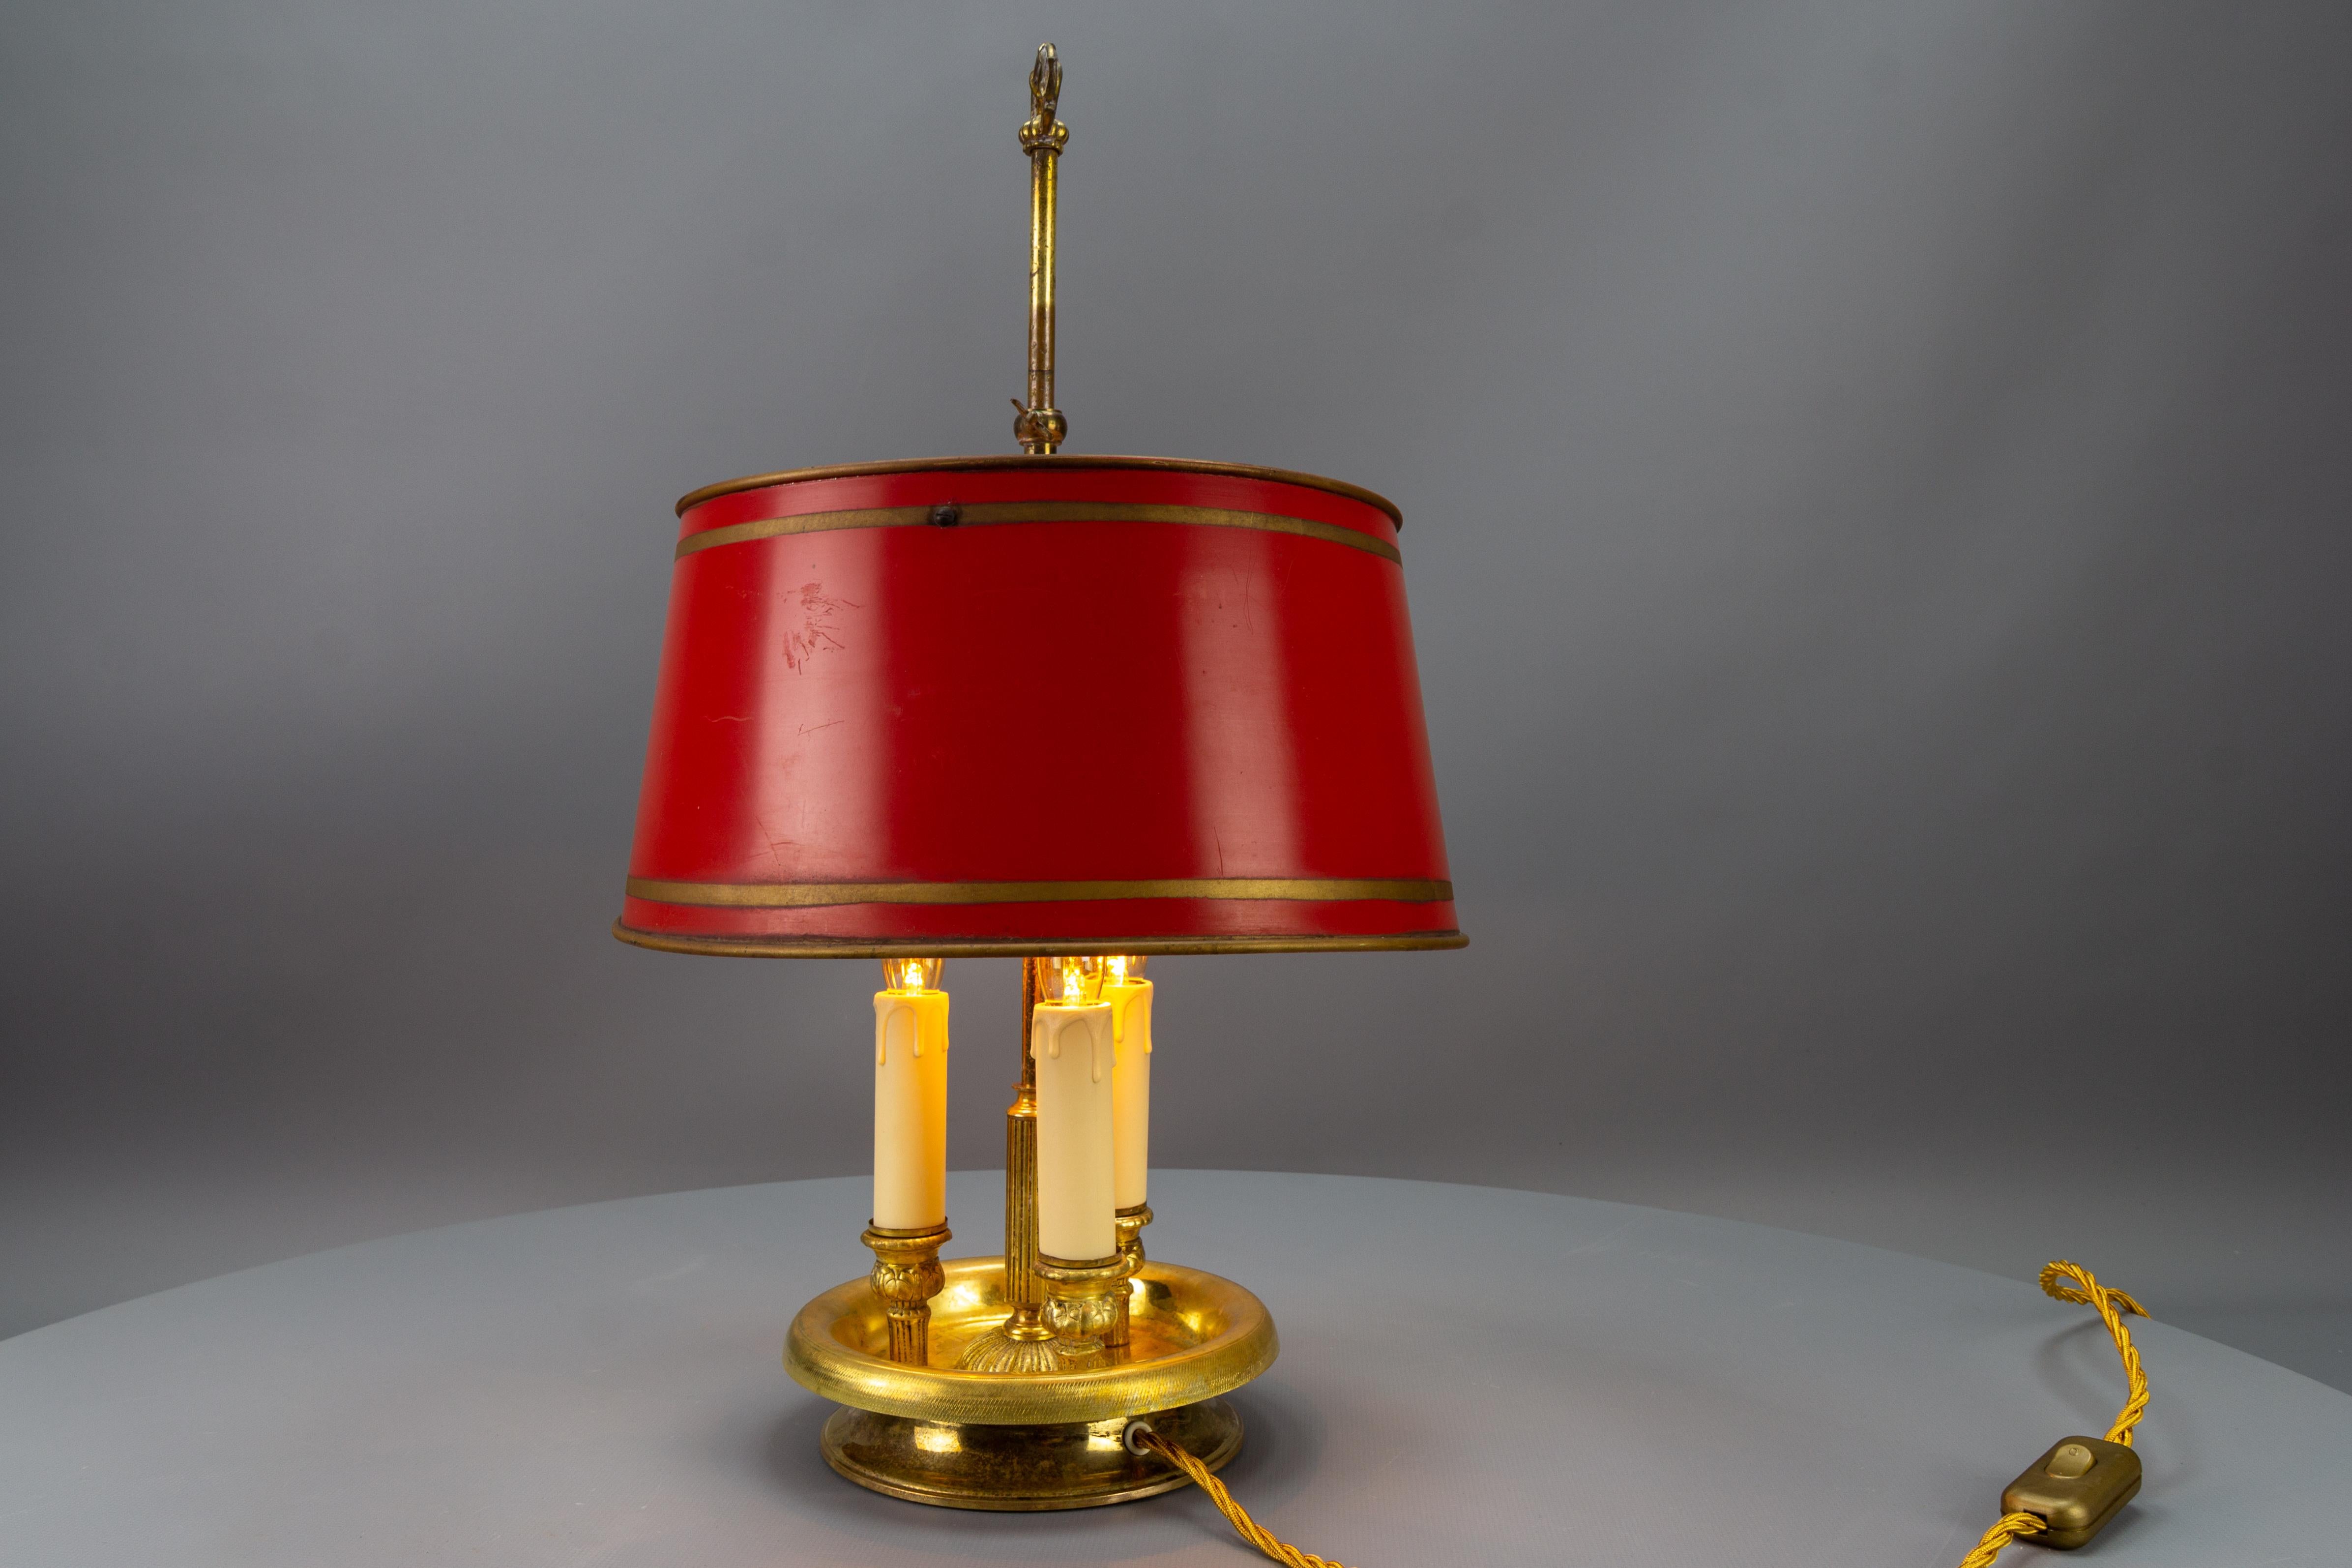 Dreiflammige französische Tischlampe aus Messing und rotem Tole-Schirm aus der Zeit um 1950.
Diese schöne dreiarmige / dreiflammige Bouillotte-Tischlampe verfügt über eine kannelierte Mittelsäule mit einem verzierten Sockel und einem verstellbaren,